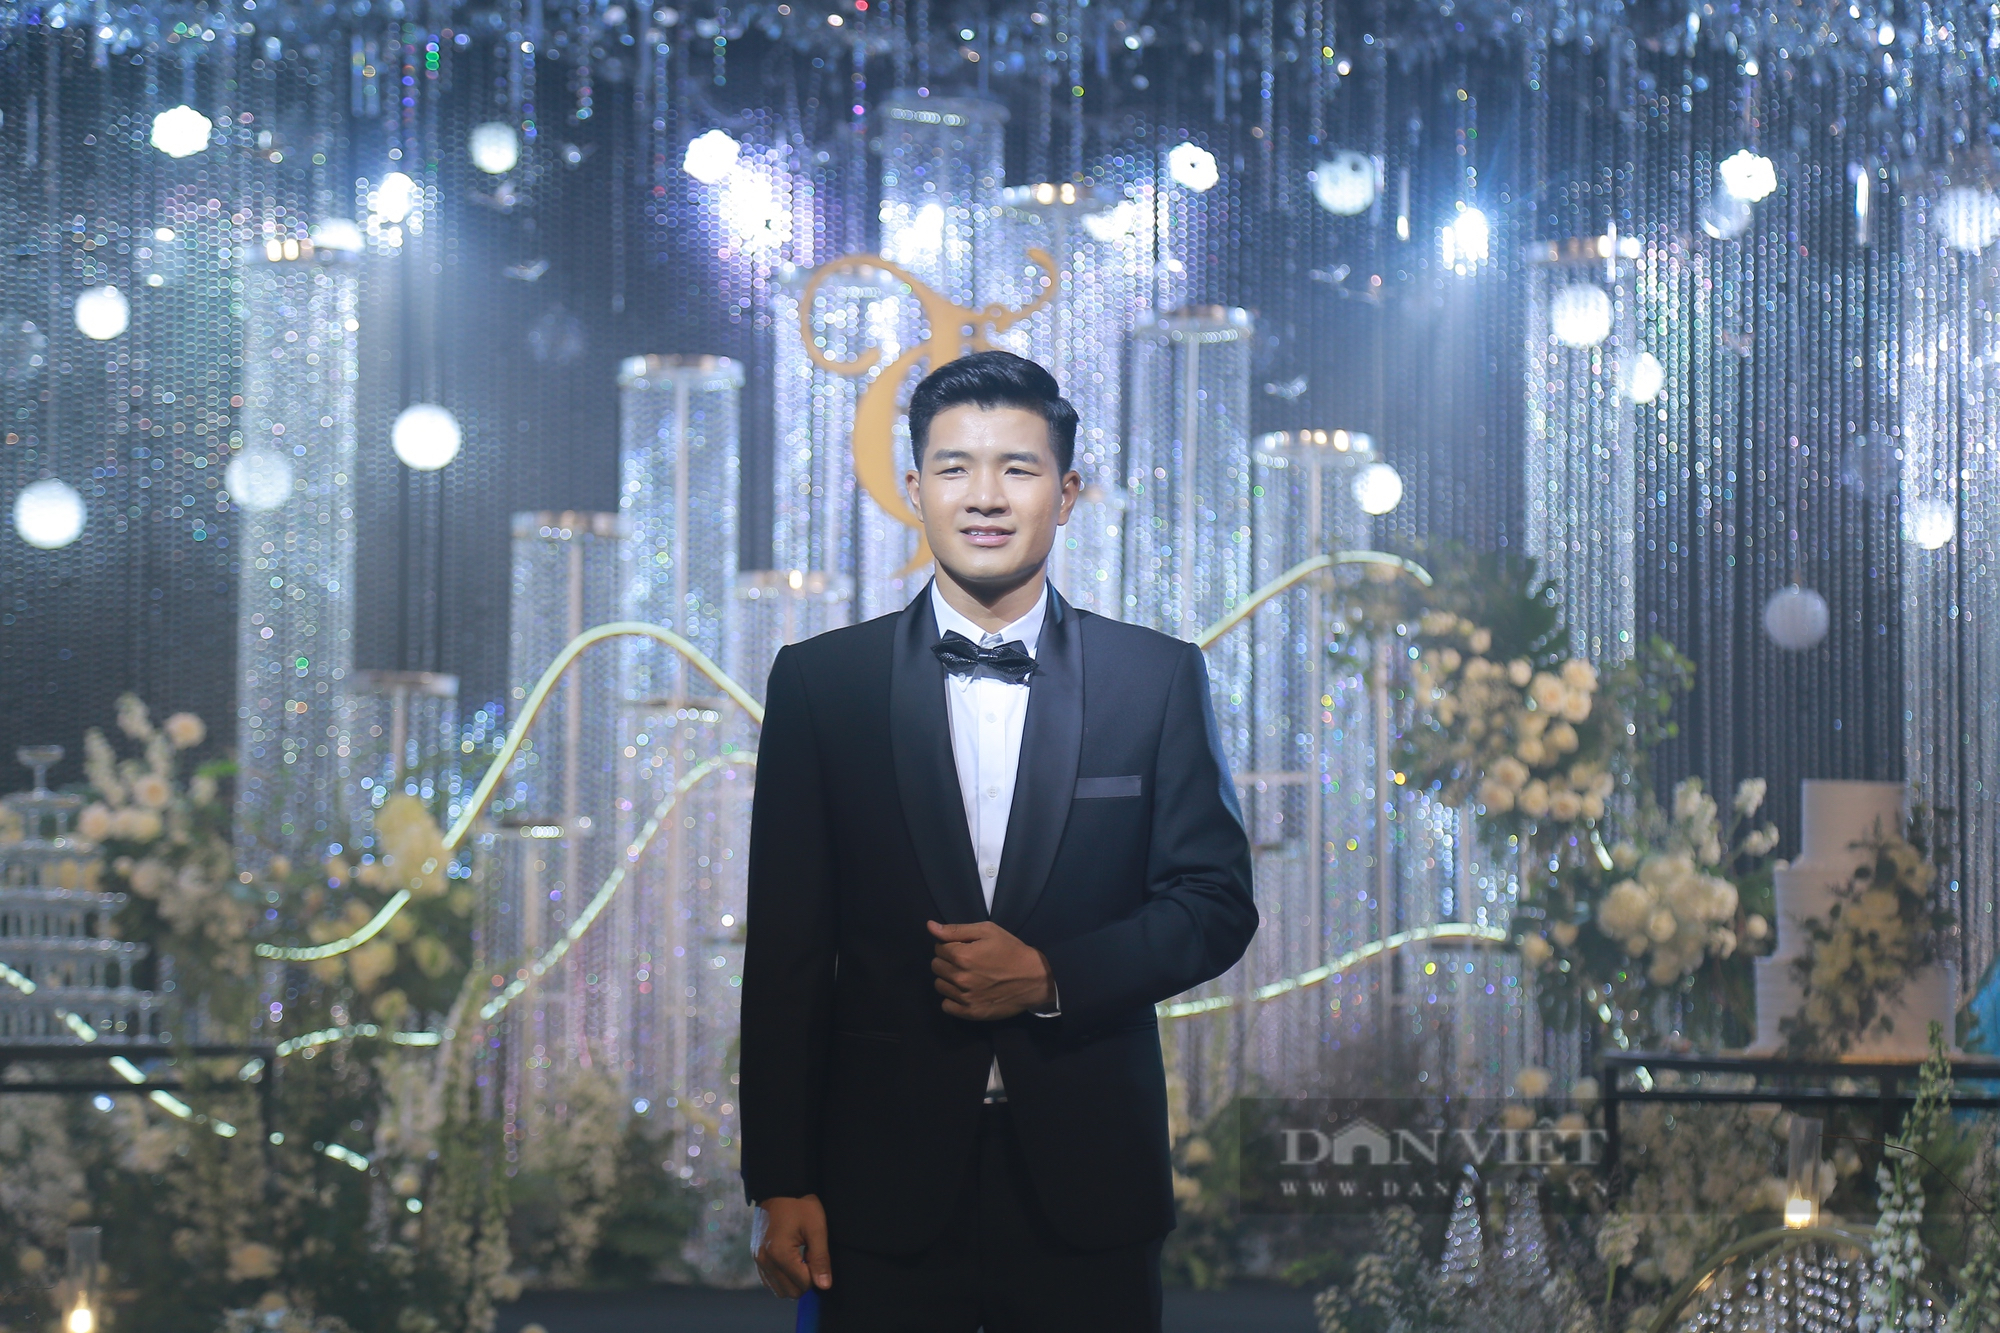 Dàn cầu thủ ĐT Việt Nam xuất hiện trong đám cưới của Đức Chinh - Ảnh 6.